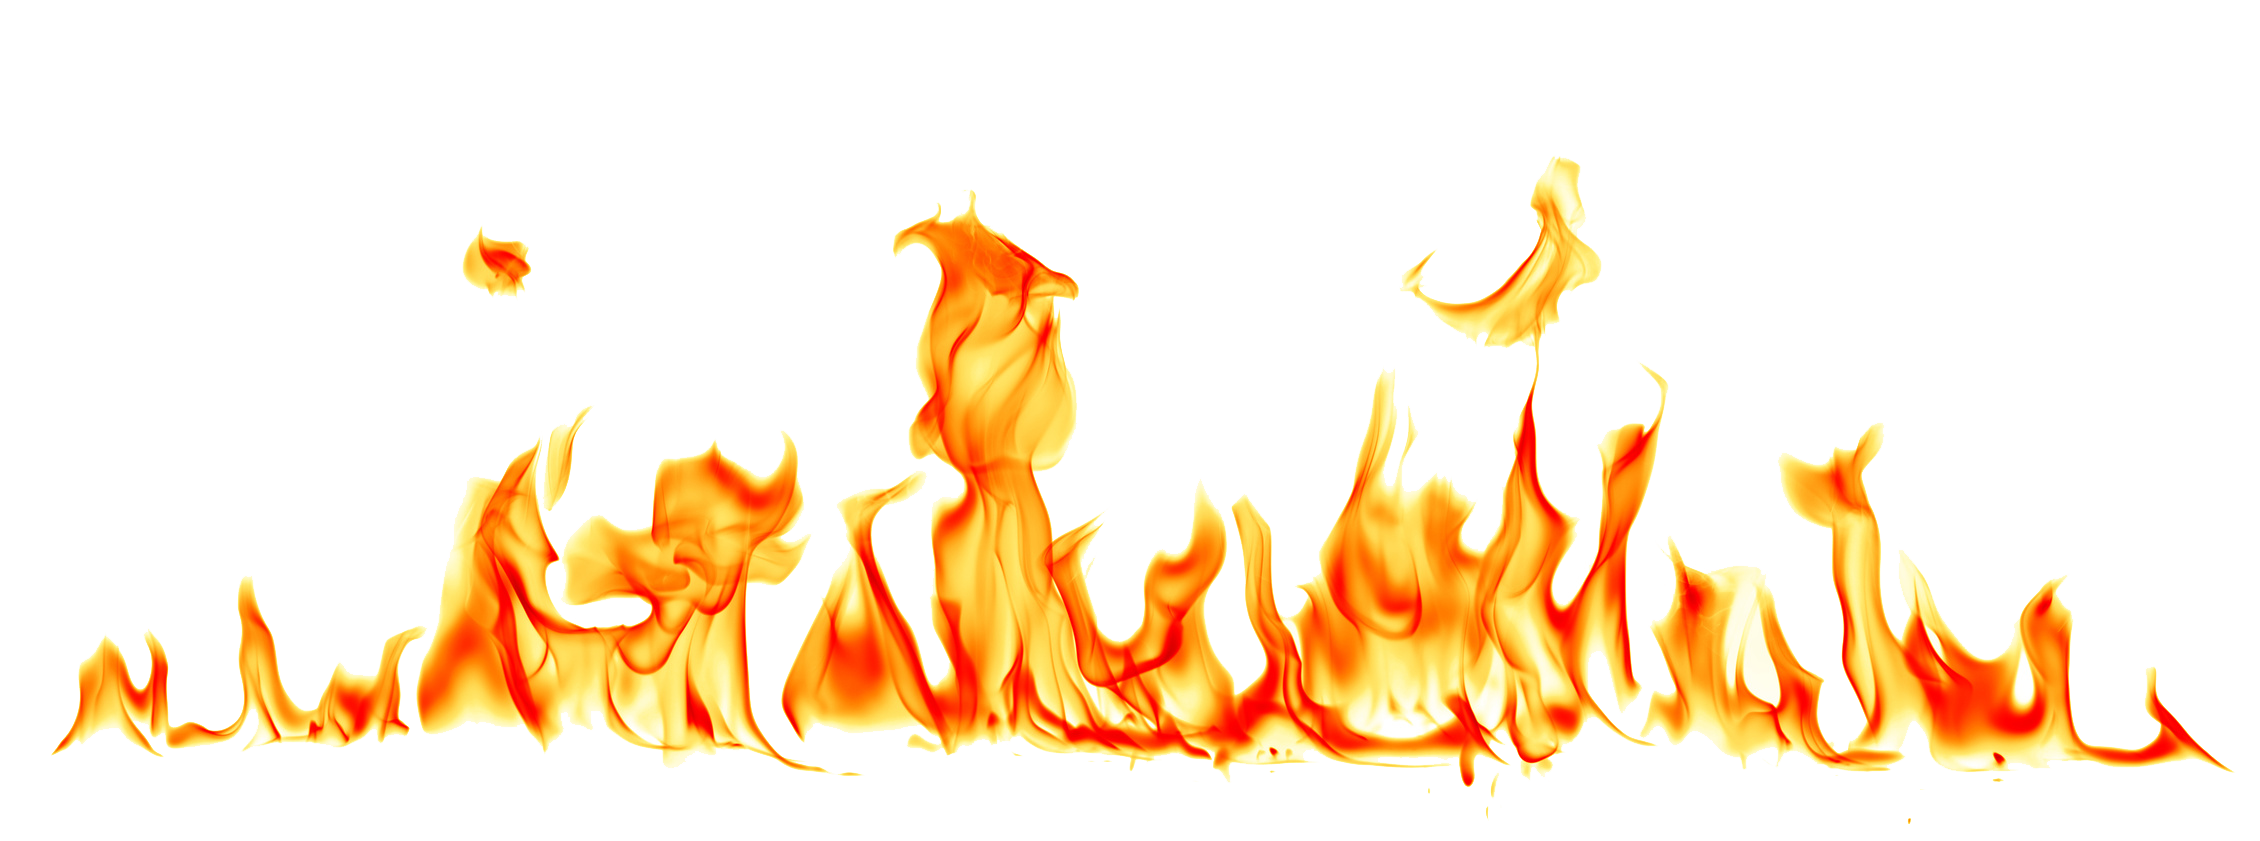 Imagem de alta qualidade de chama de fogo